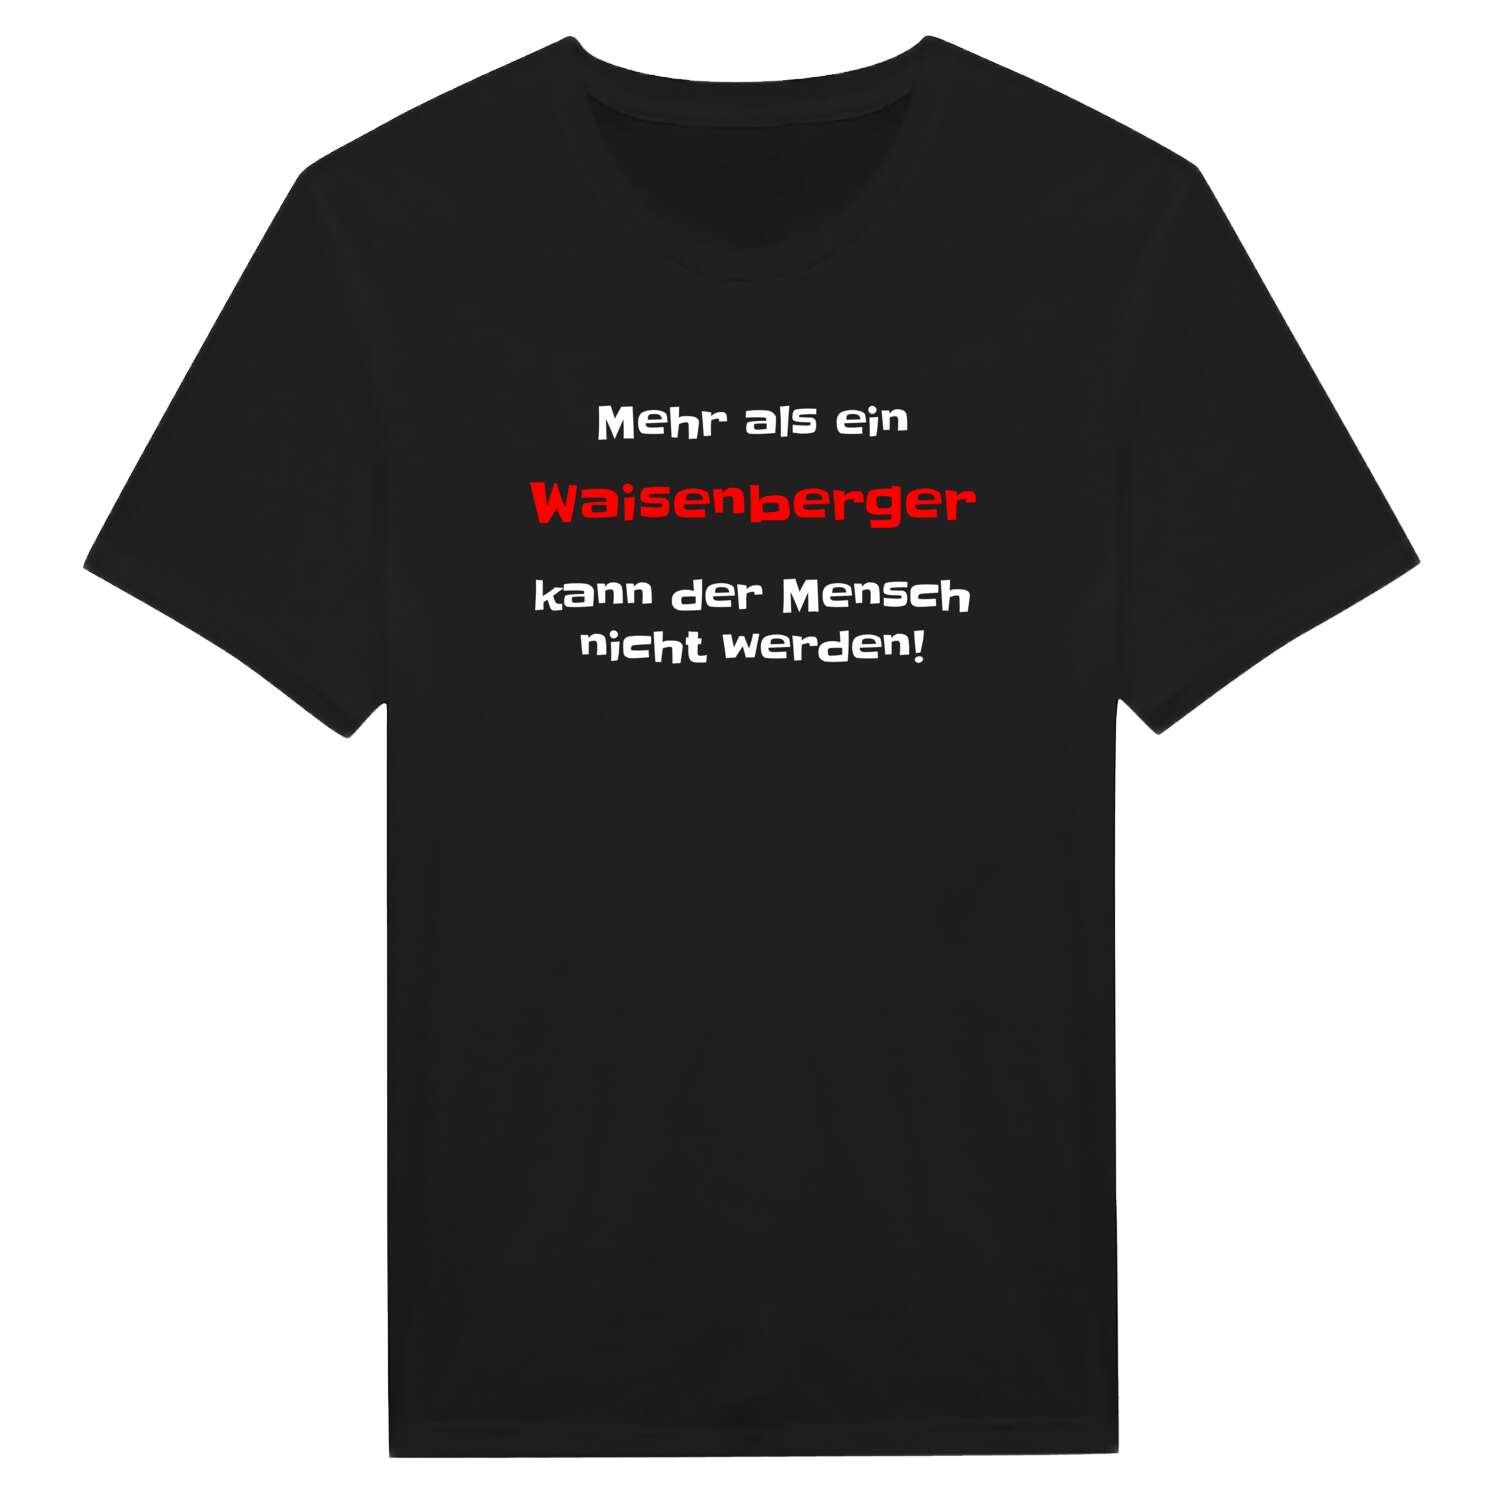 Waisenberg T-Shirt »Mehr als ein«